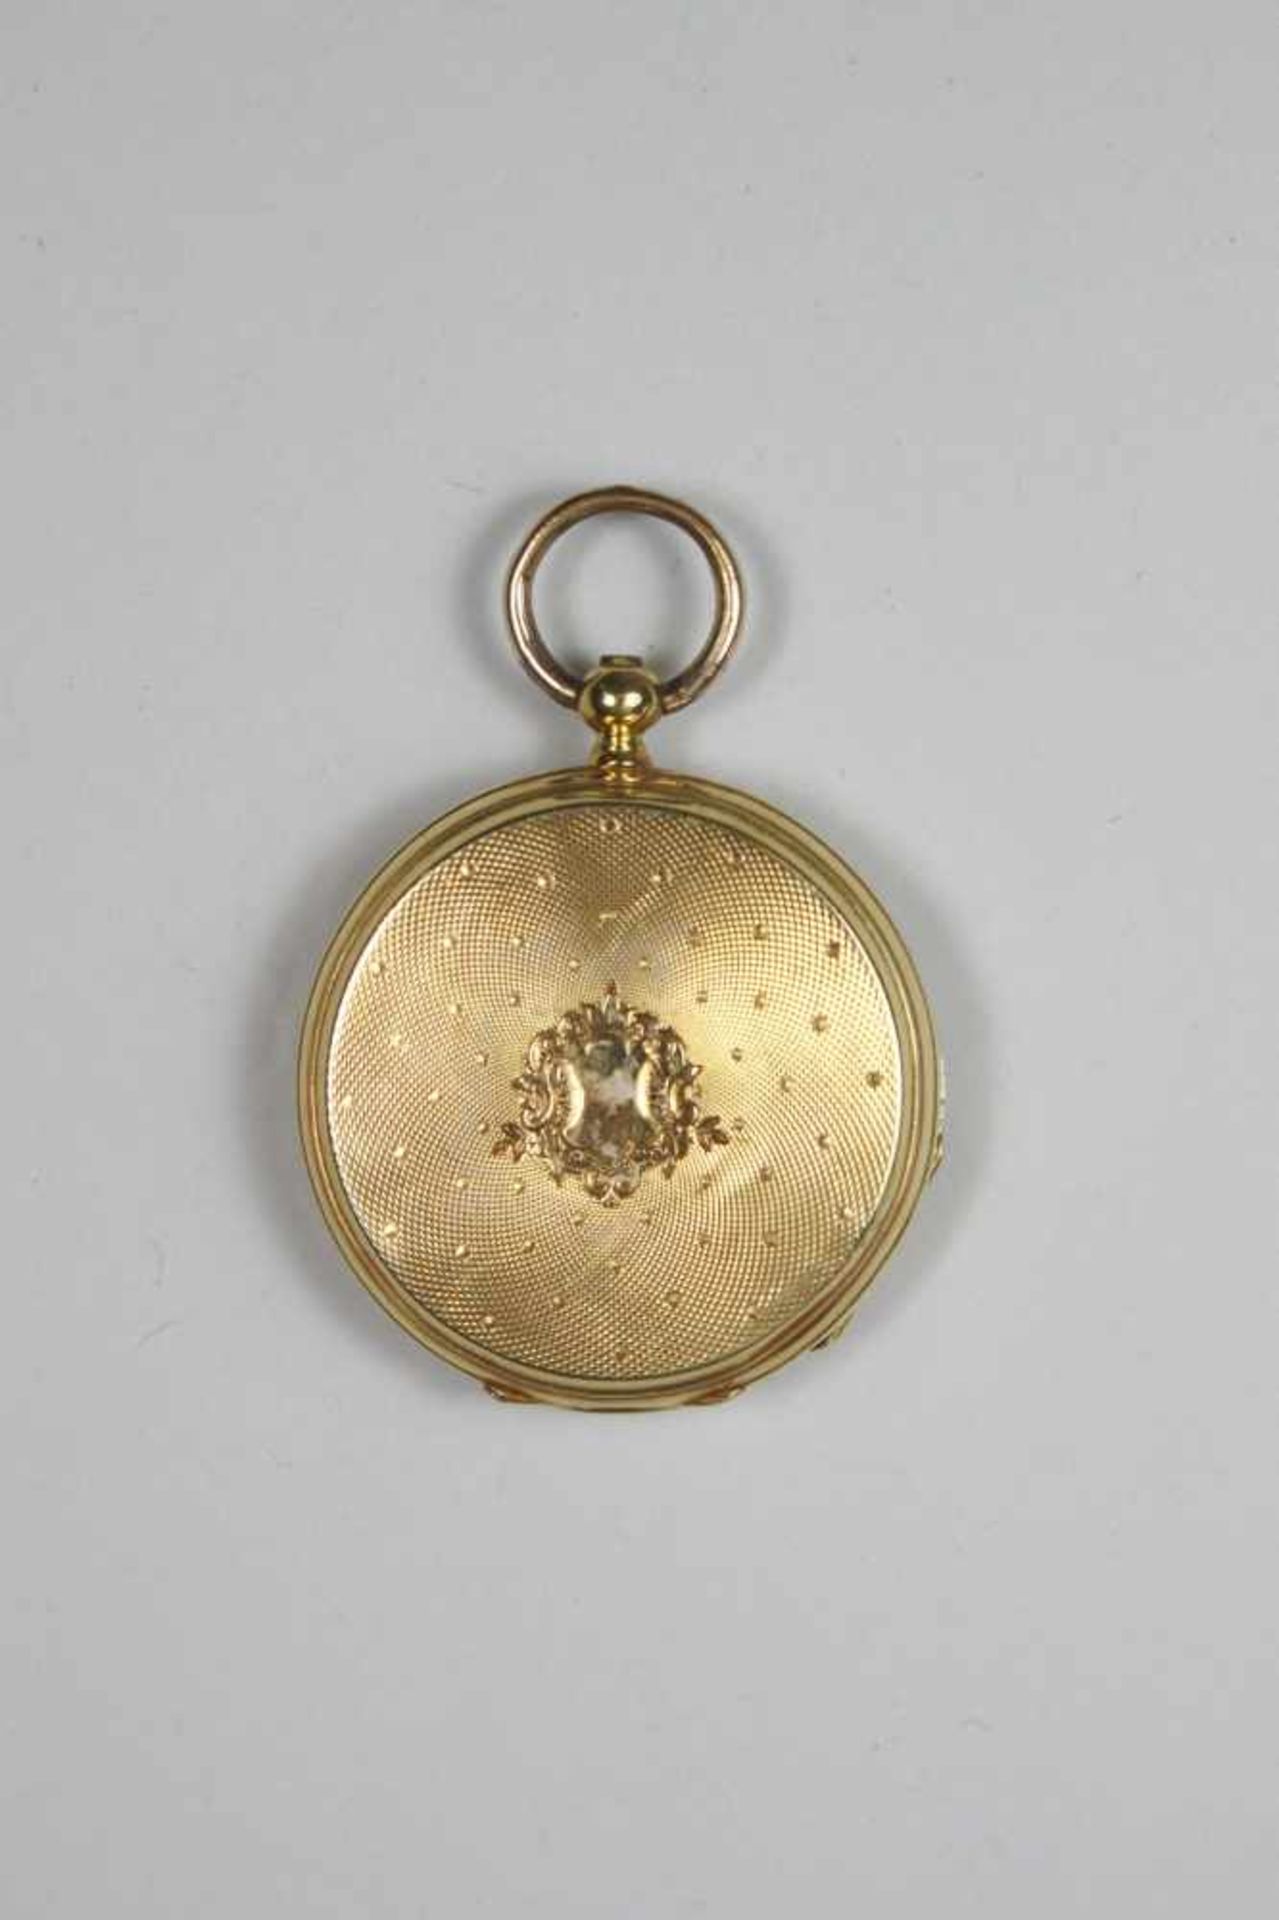 Kleine Taschenuhr, Gold, römische Zahlen, Gravur: Cylindrel Huit Rubis und Seriennr. auf dem inneren - Bild 2 aus 4